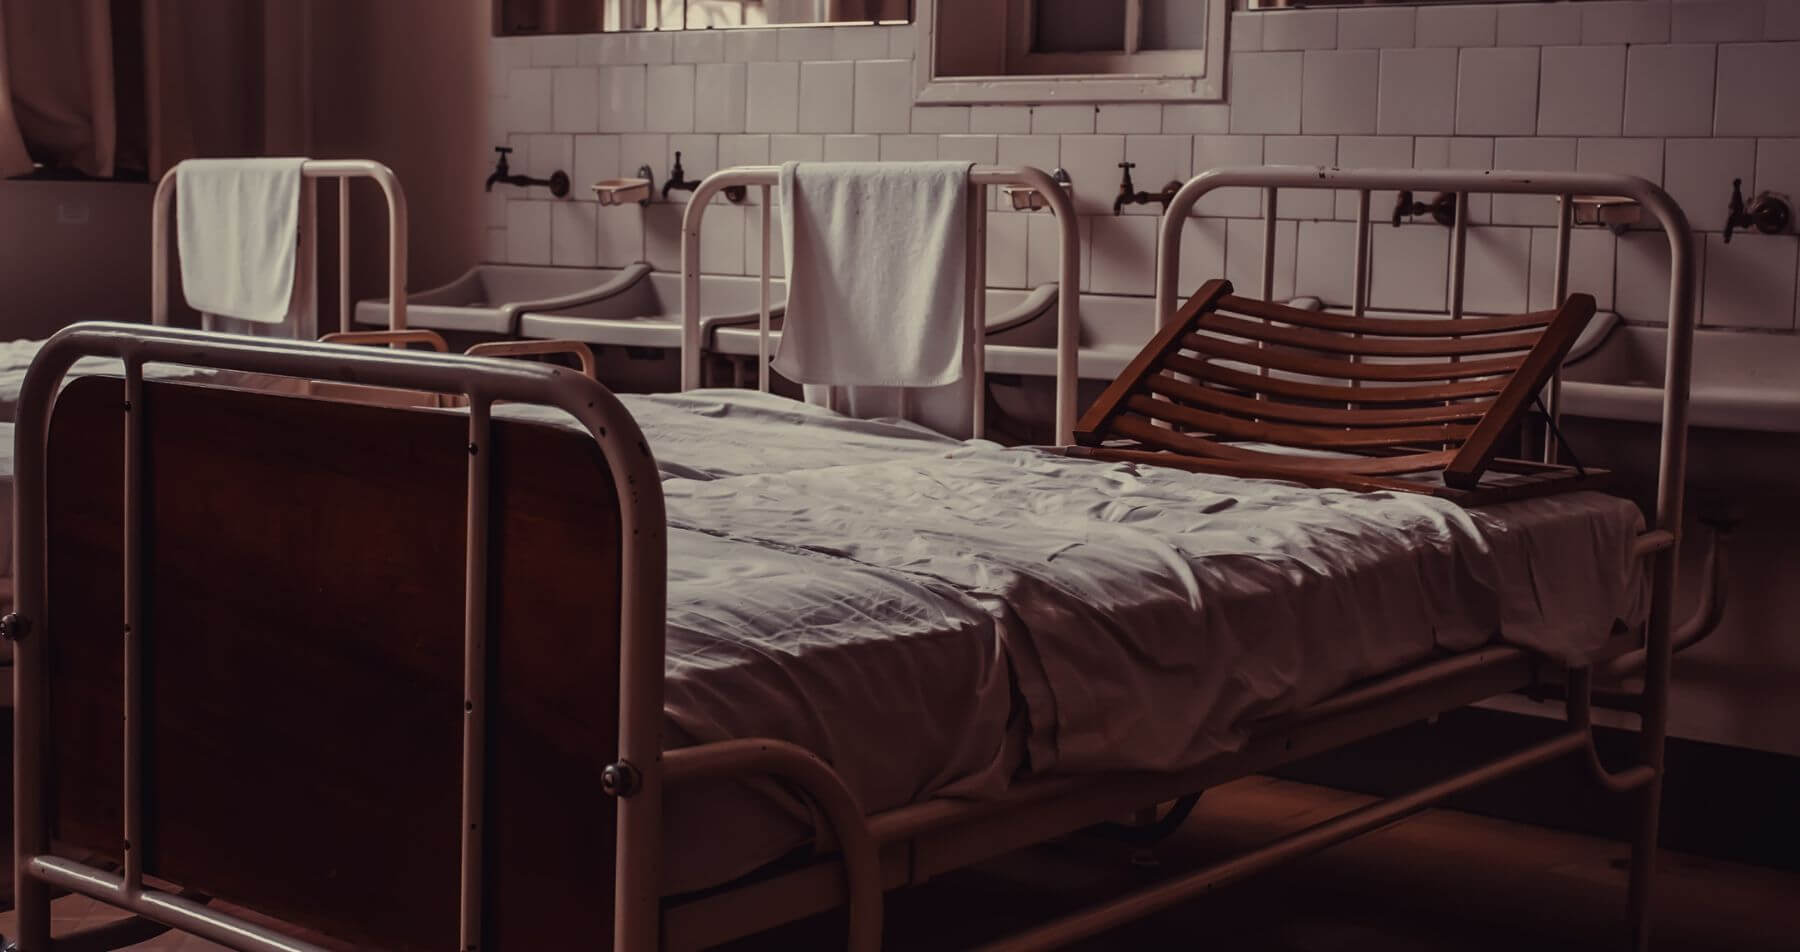 A dirty hospital ward.